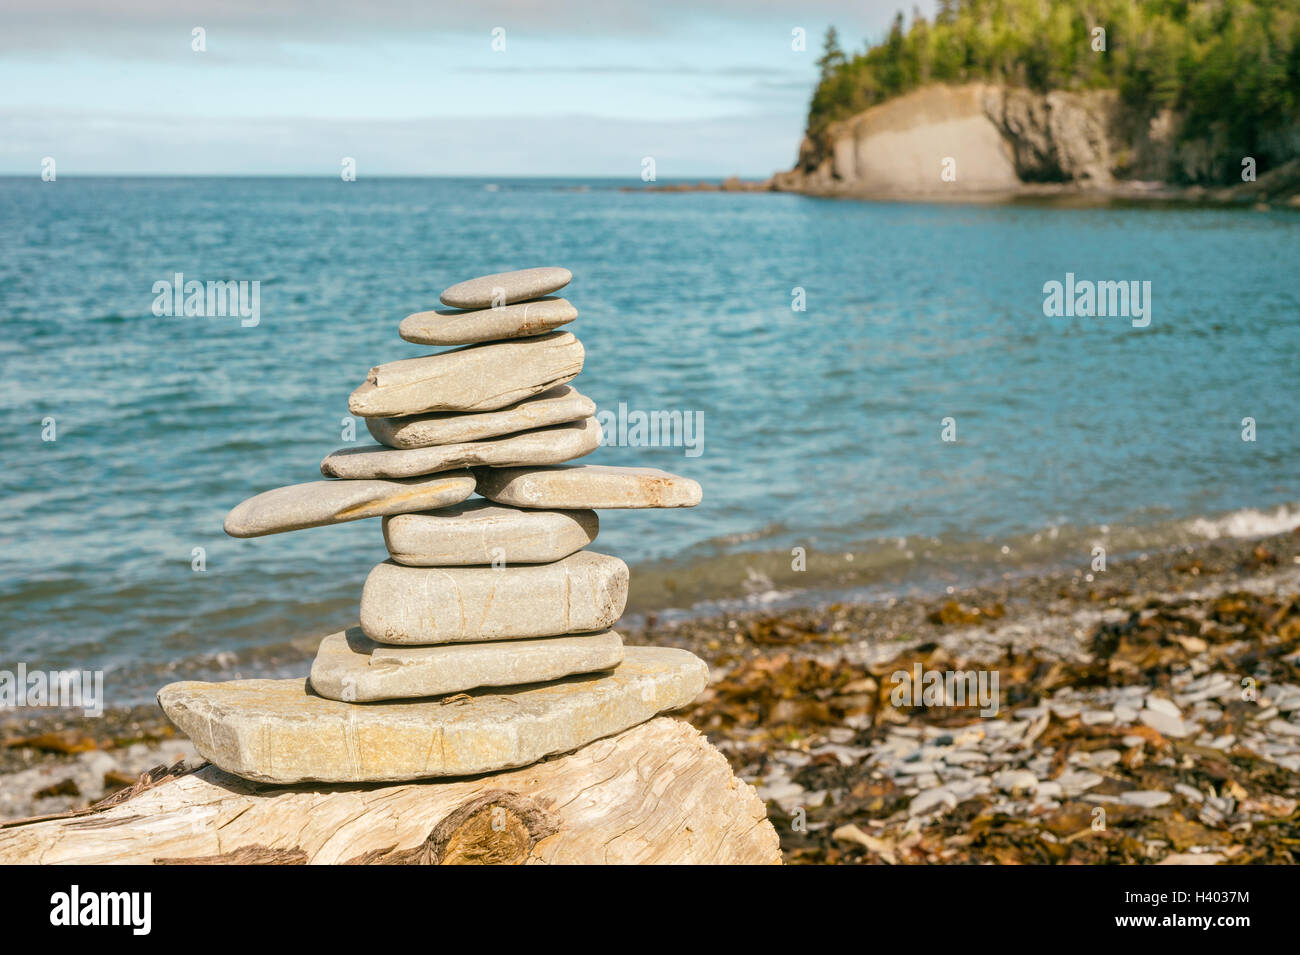 Pile en pierre sur plage avec filtre retro décolorées Banque D'Images